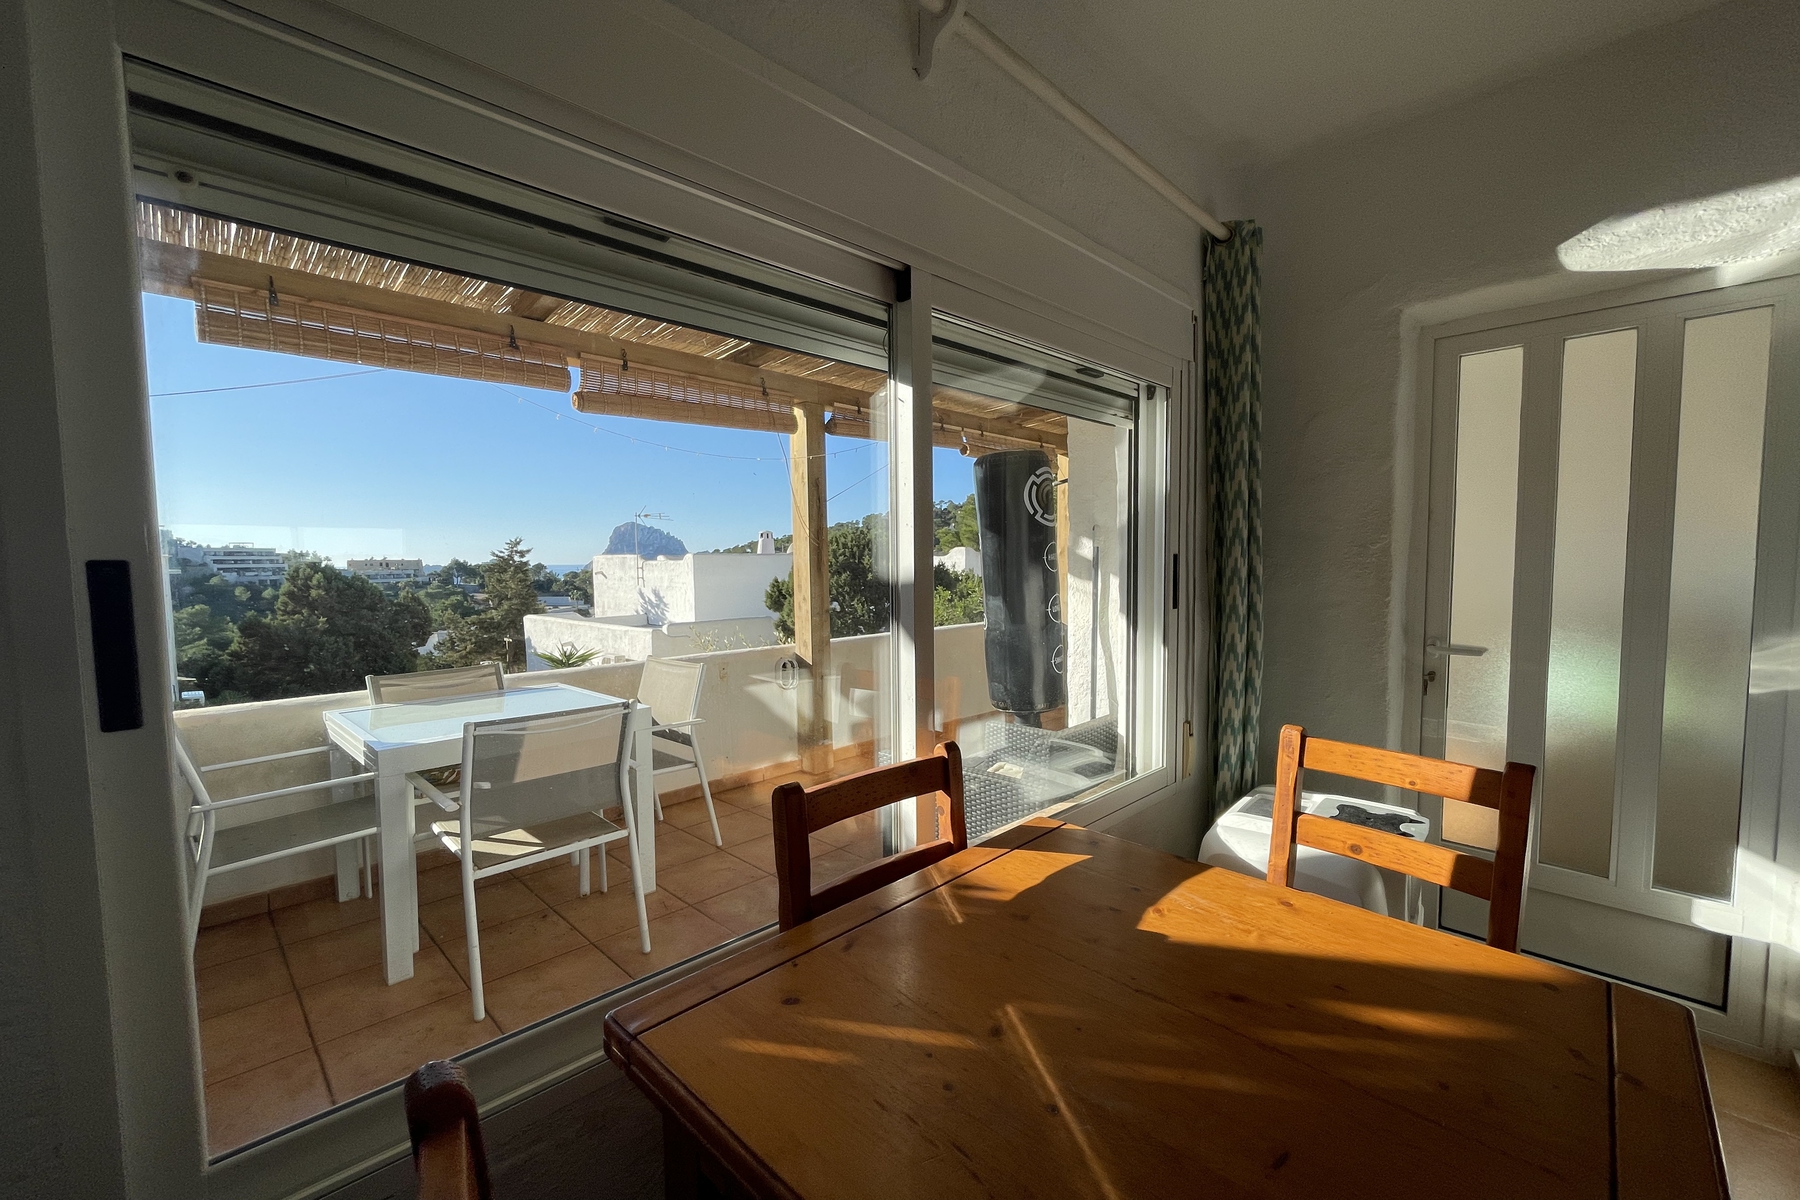 Apartamento doble/Casa adosada con hermosas vistas a Es Vedrá